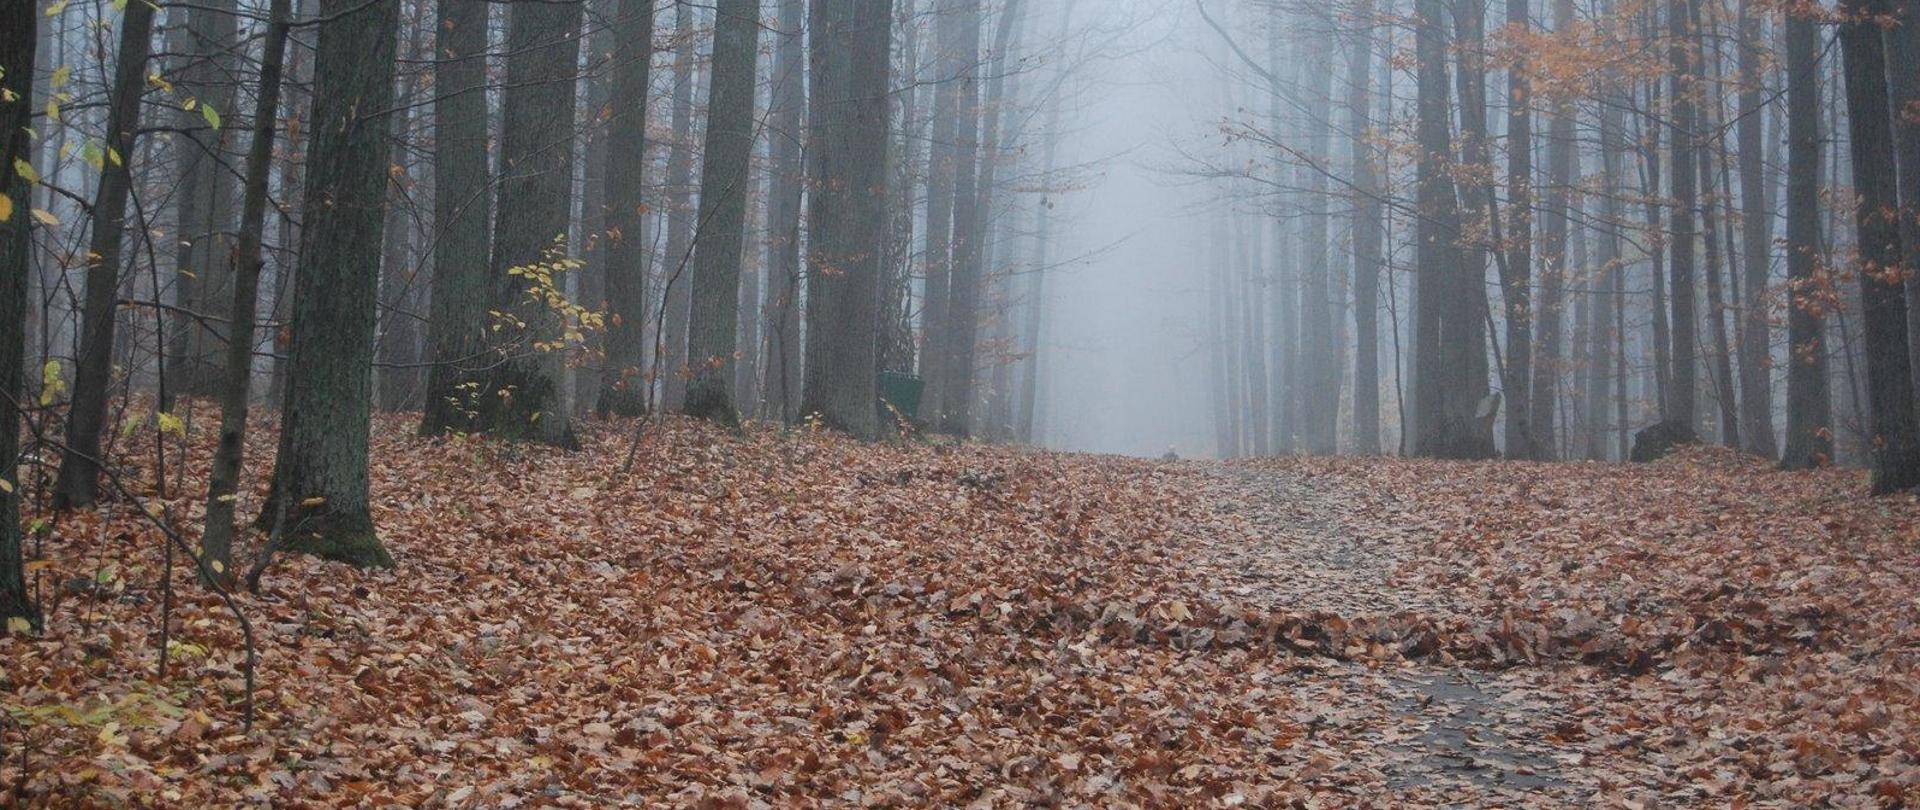 Las jesienią, na ziemi leżą liście. Pomiędzy nimi widoczna ścieżka. widać mgłę za drzewami. 